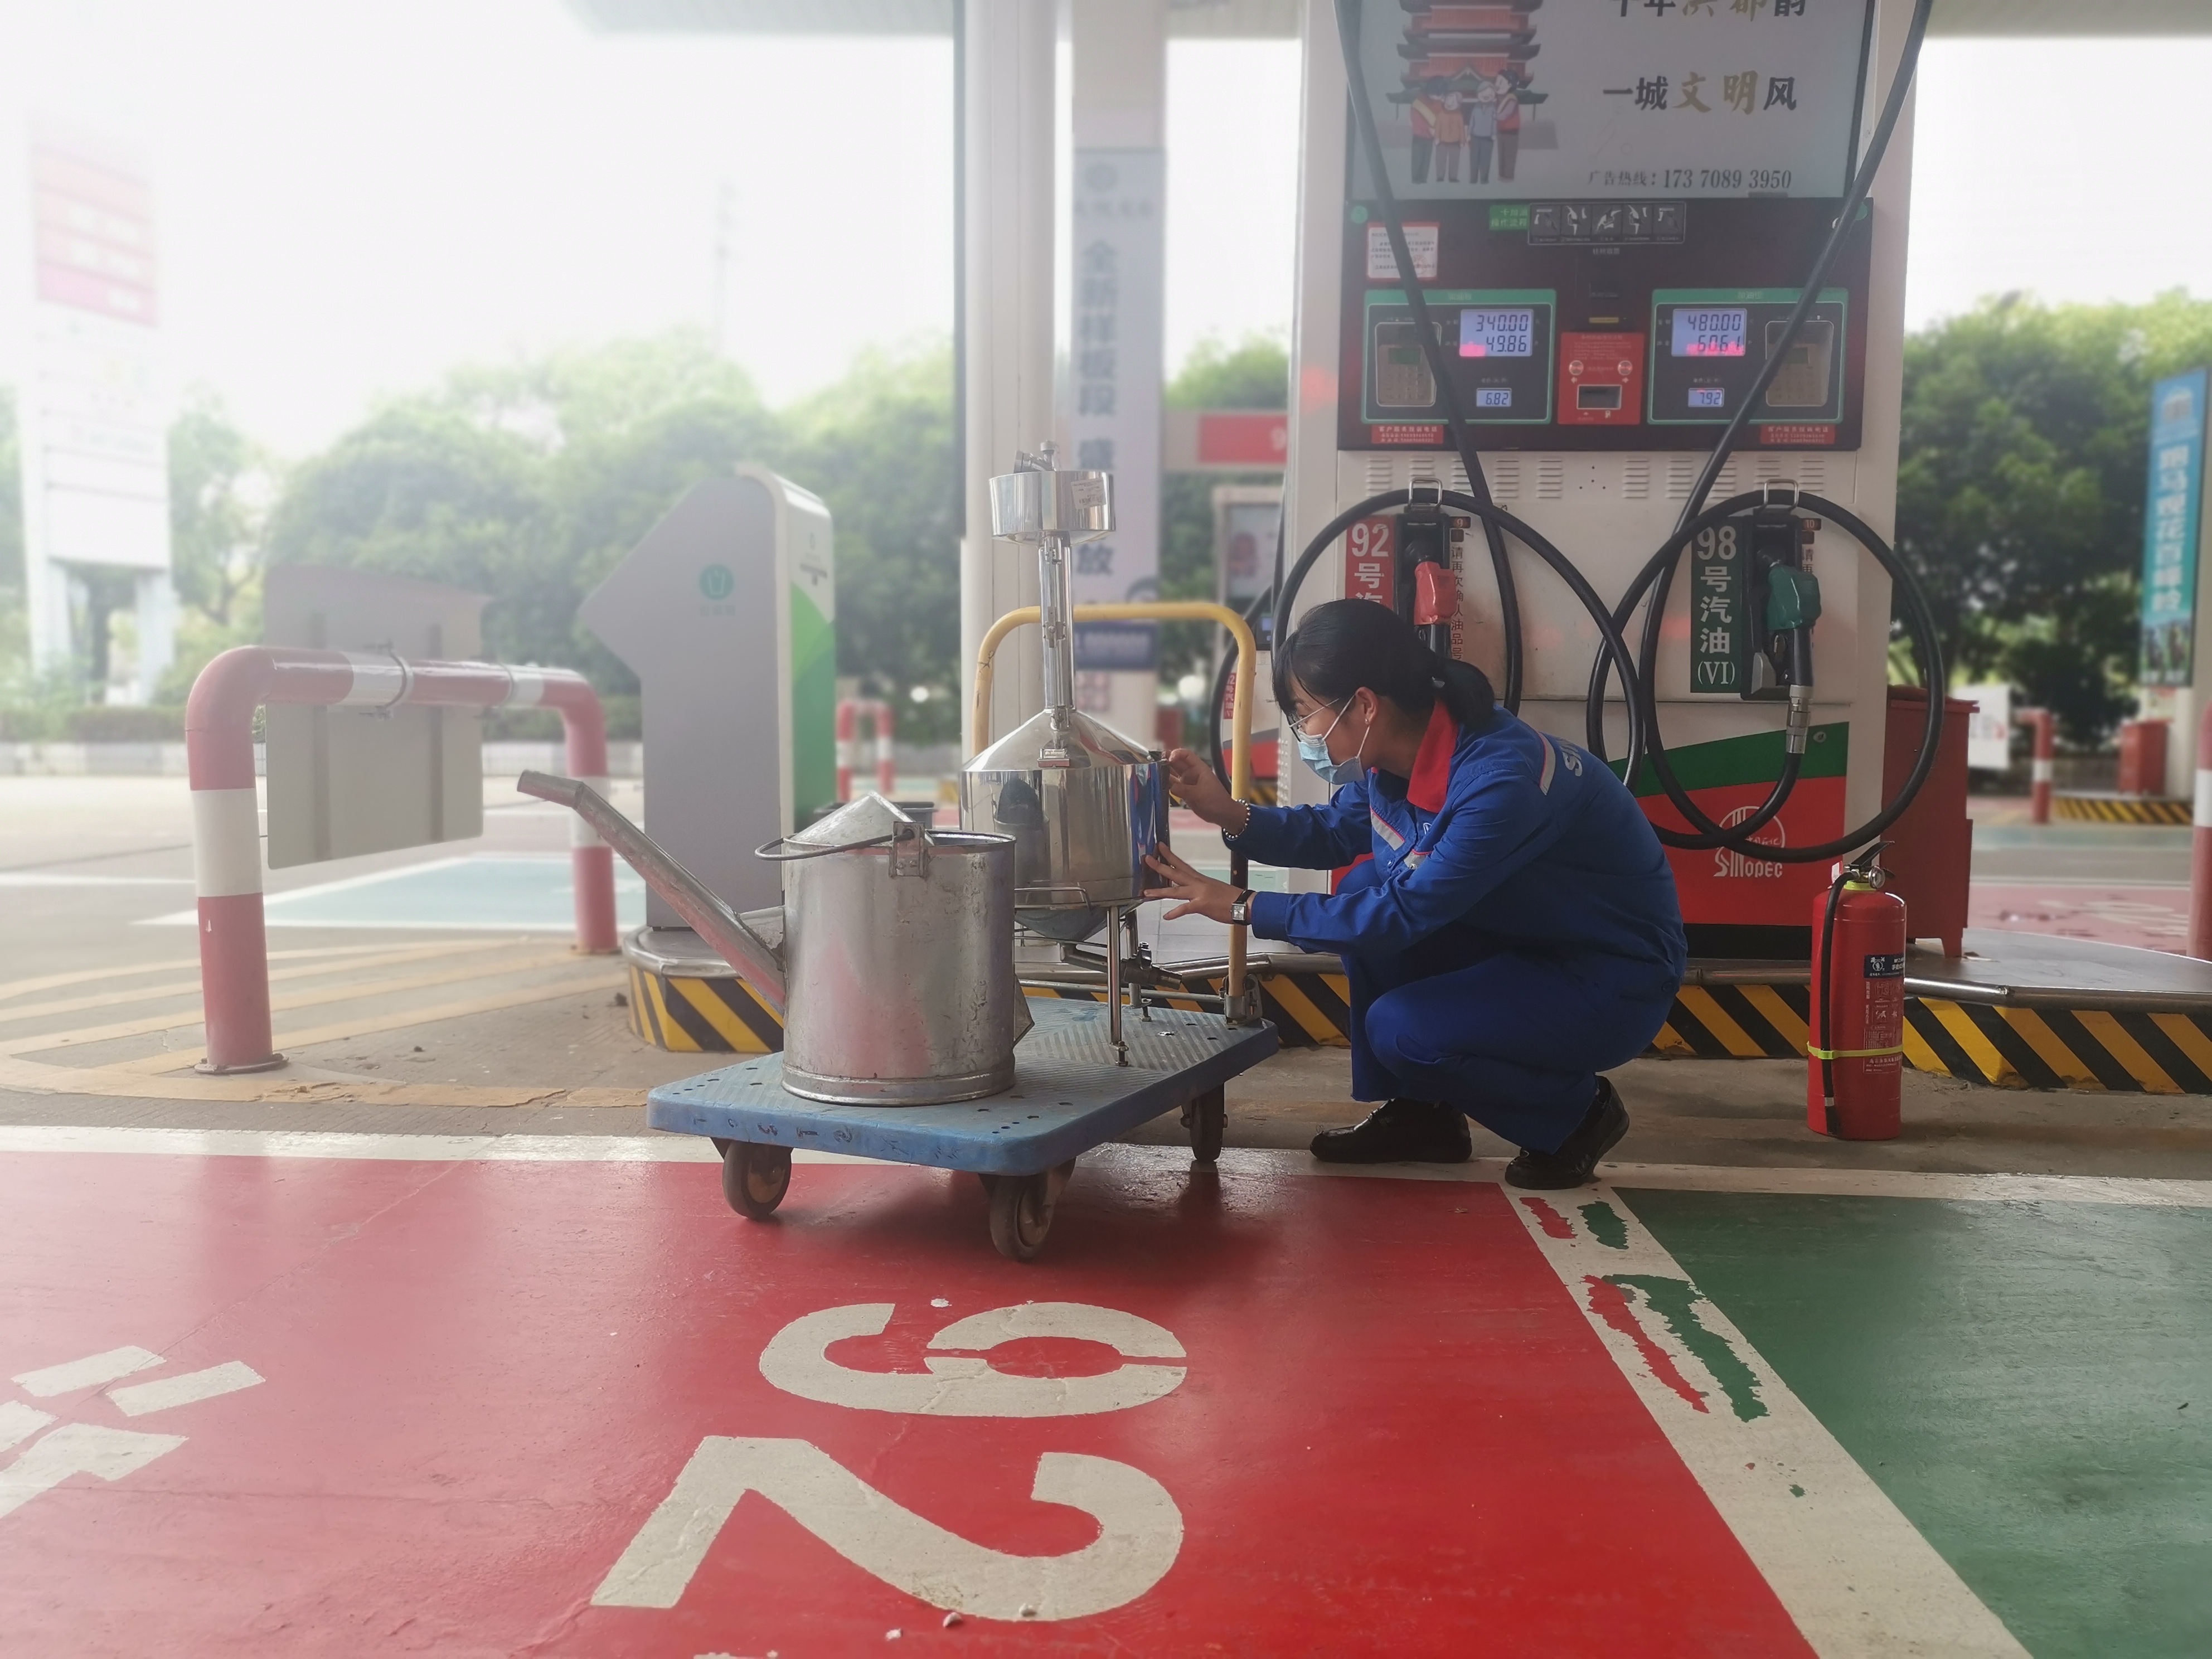 世界500强企业HB火博体育贵州石油贵阳分公司正在招聘14位多职加油站后备站长